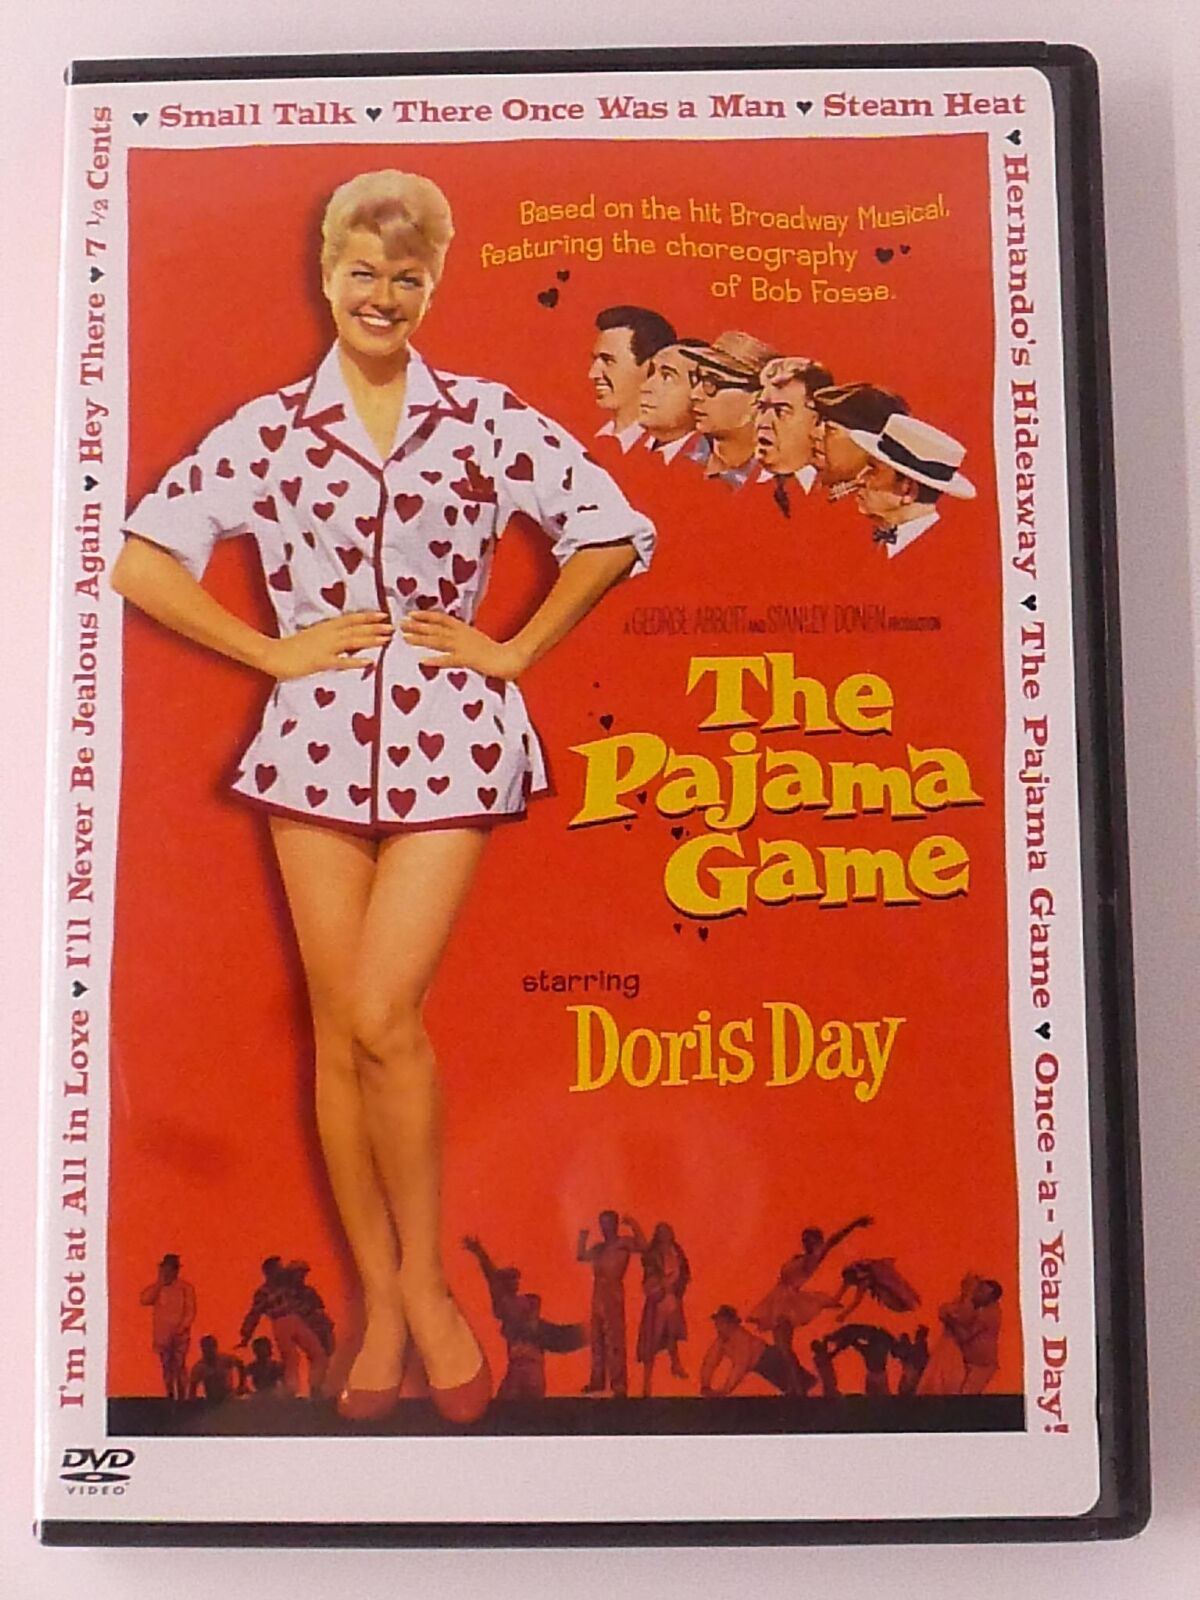 The Pajama Game (DVD, 1957) - J0806